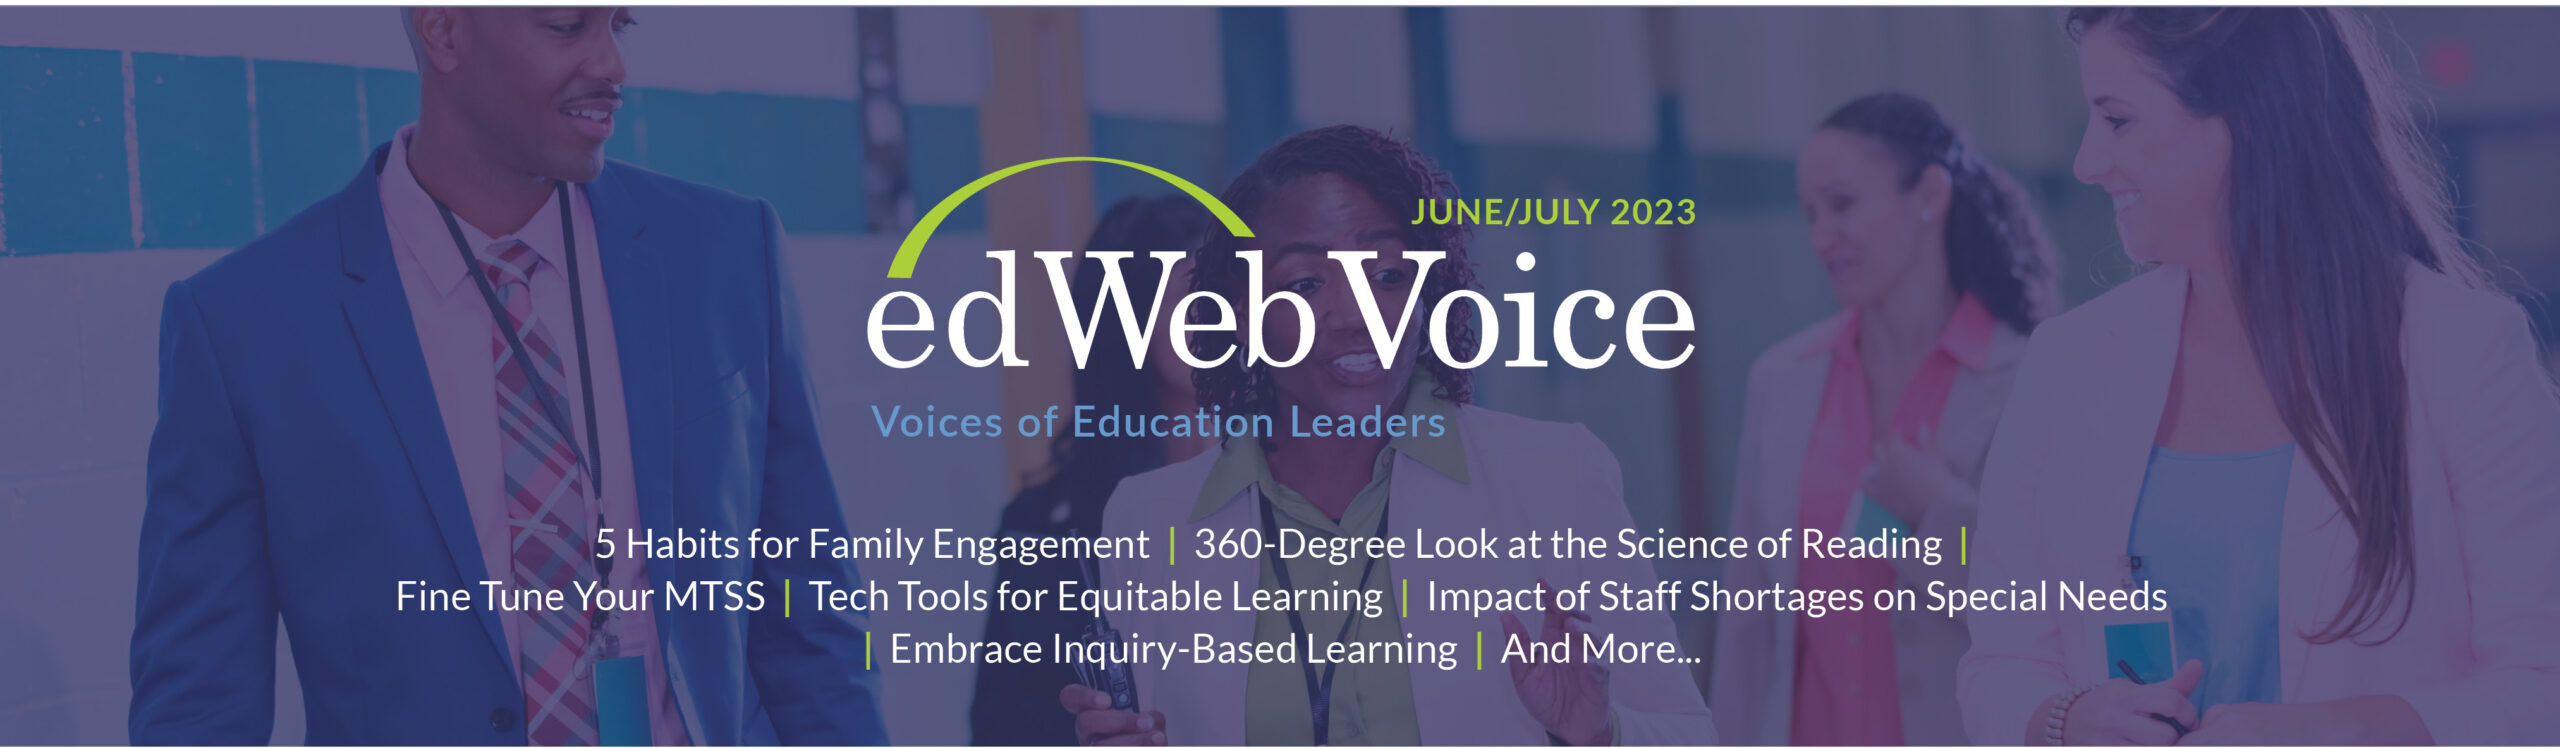 edWeb Voice June 2023